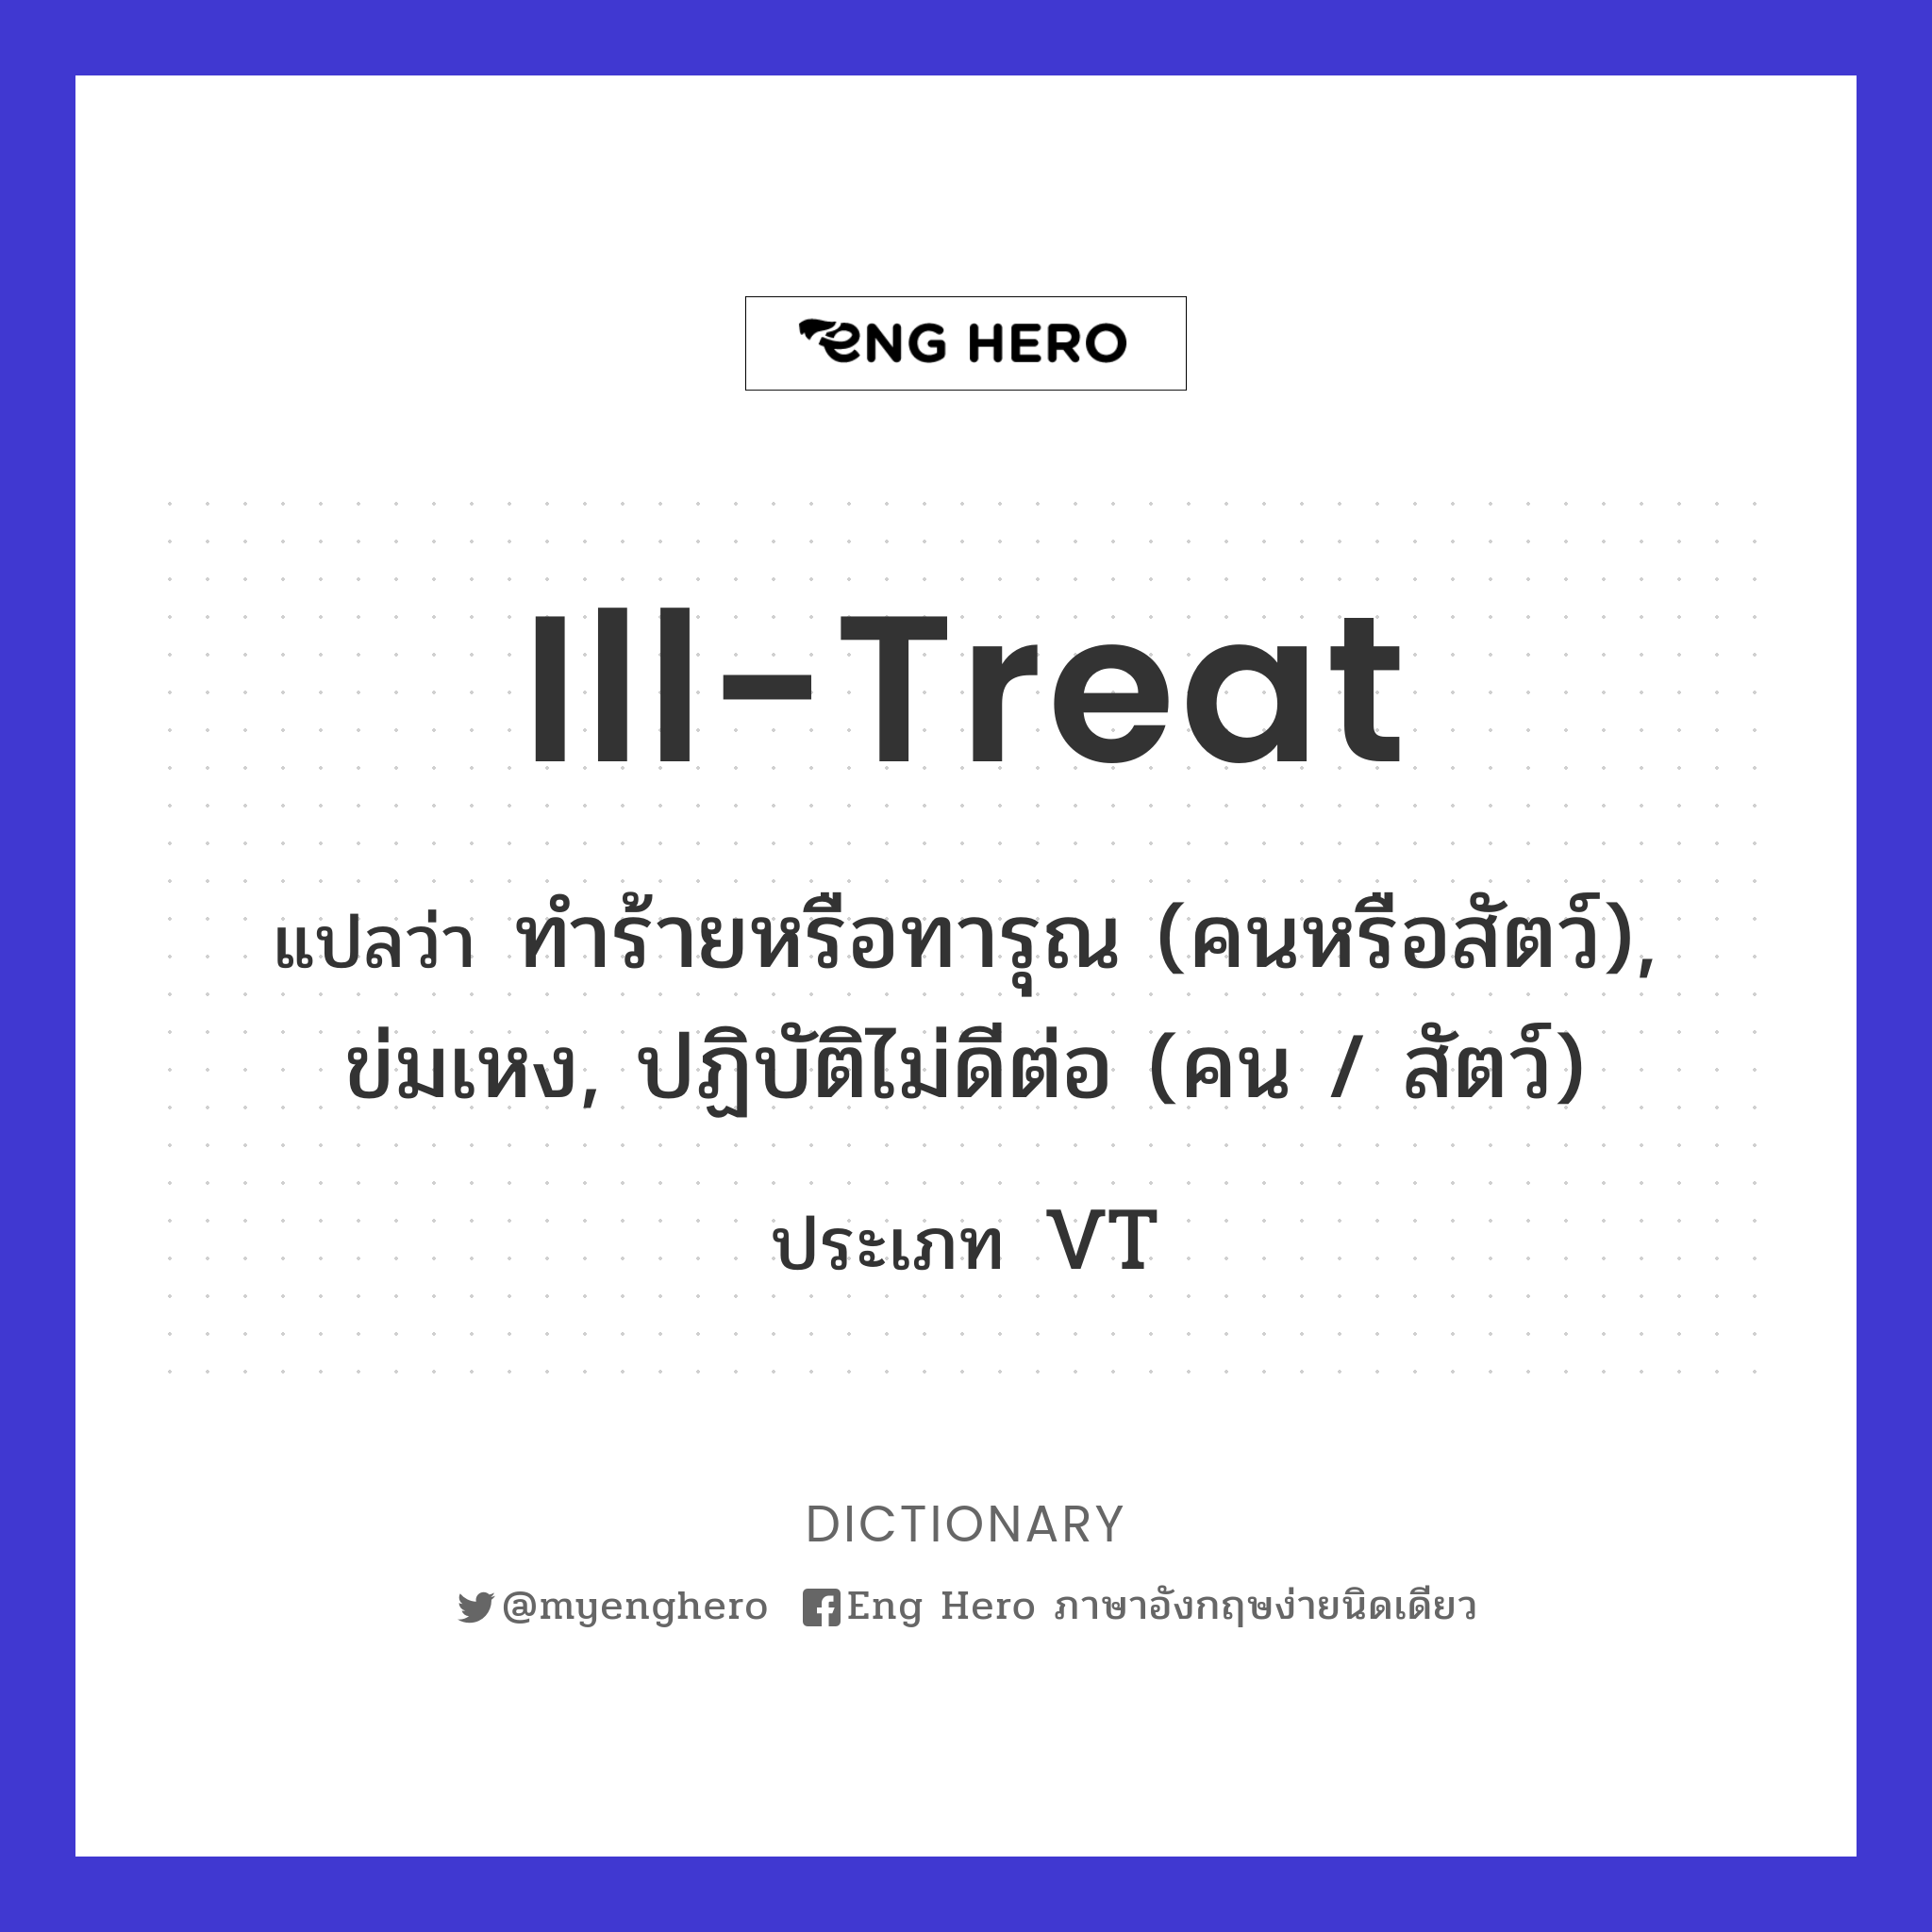 ill-treat